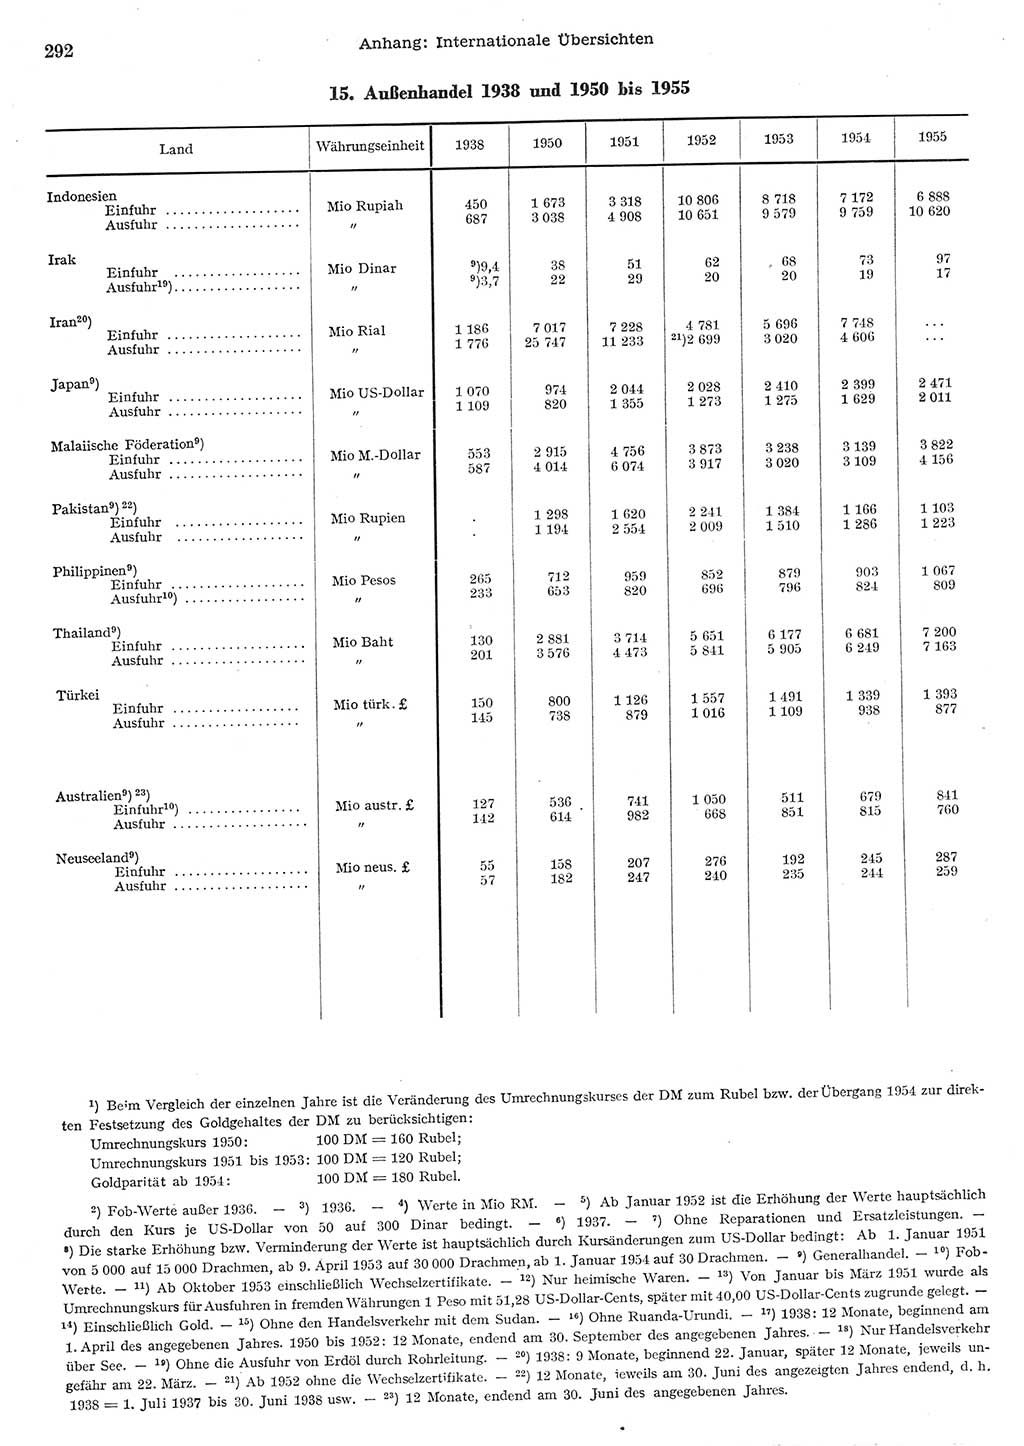 Statistisches Jahrbuch der Deutschen Demokratischen Republik (DDR) 1955, Seite 292 (Stat. Jb. DDR 1955, S. 292)